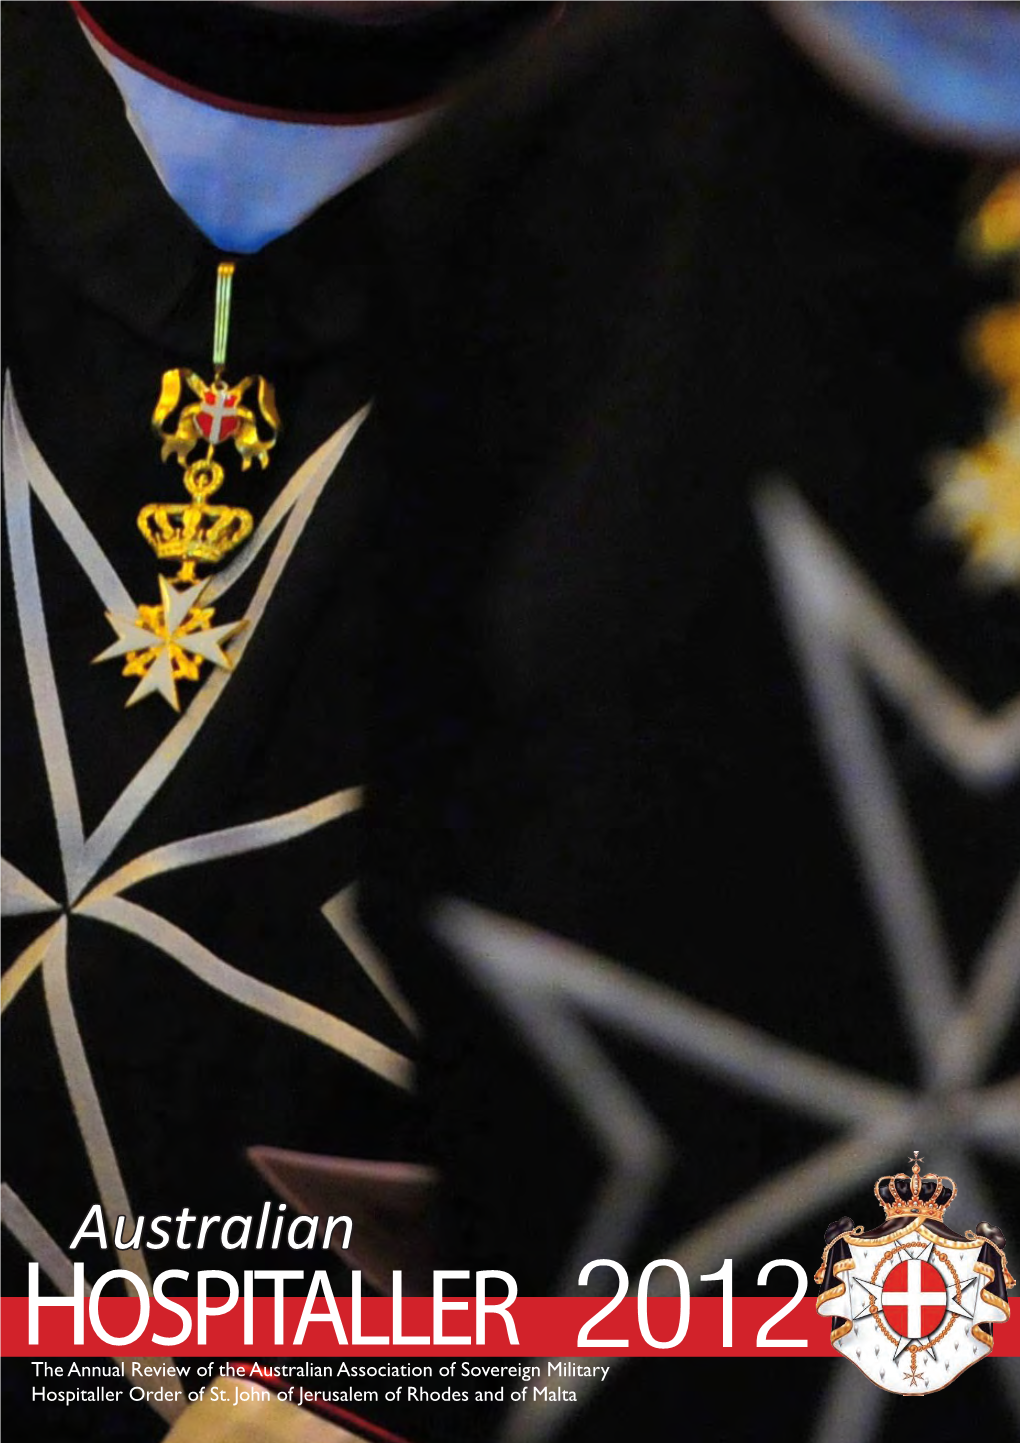 Australian HOSPITALLER 2012 the Annual Review of the Australian Association of Sovereign Military Hospitaller Order of St